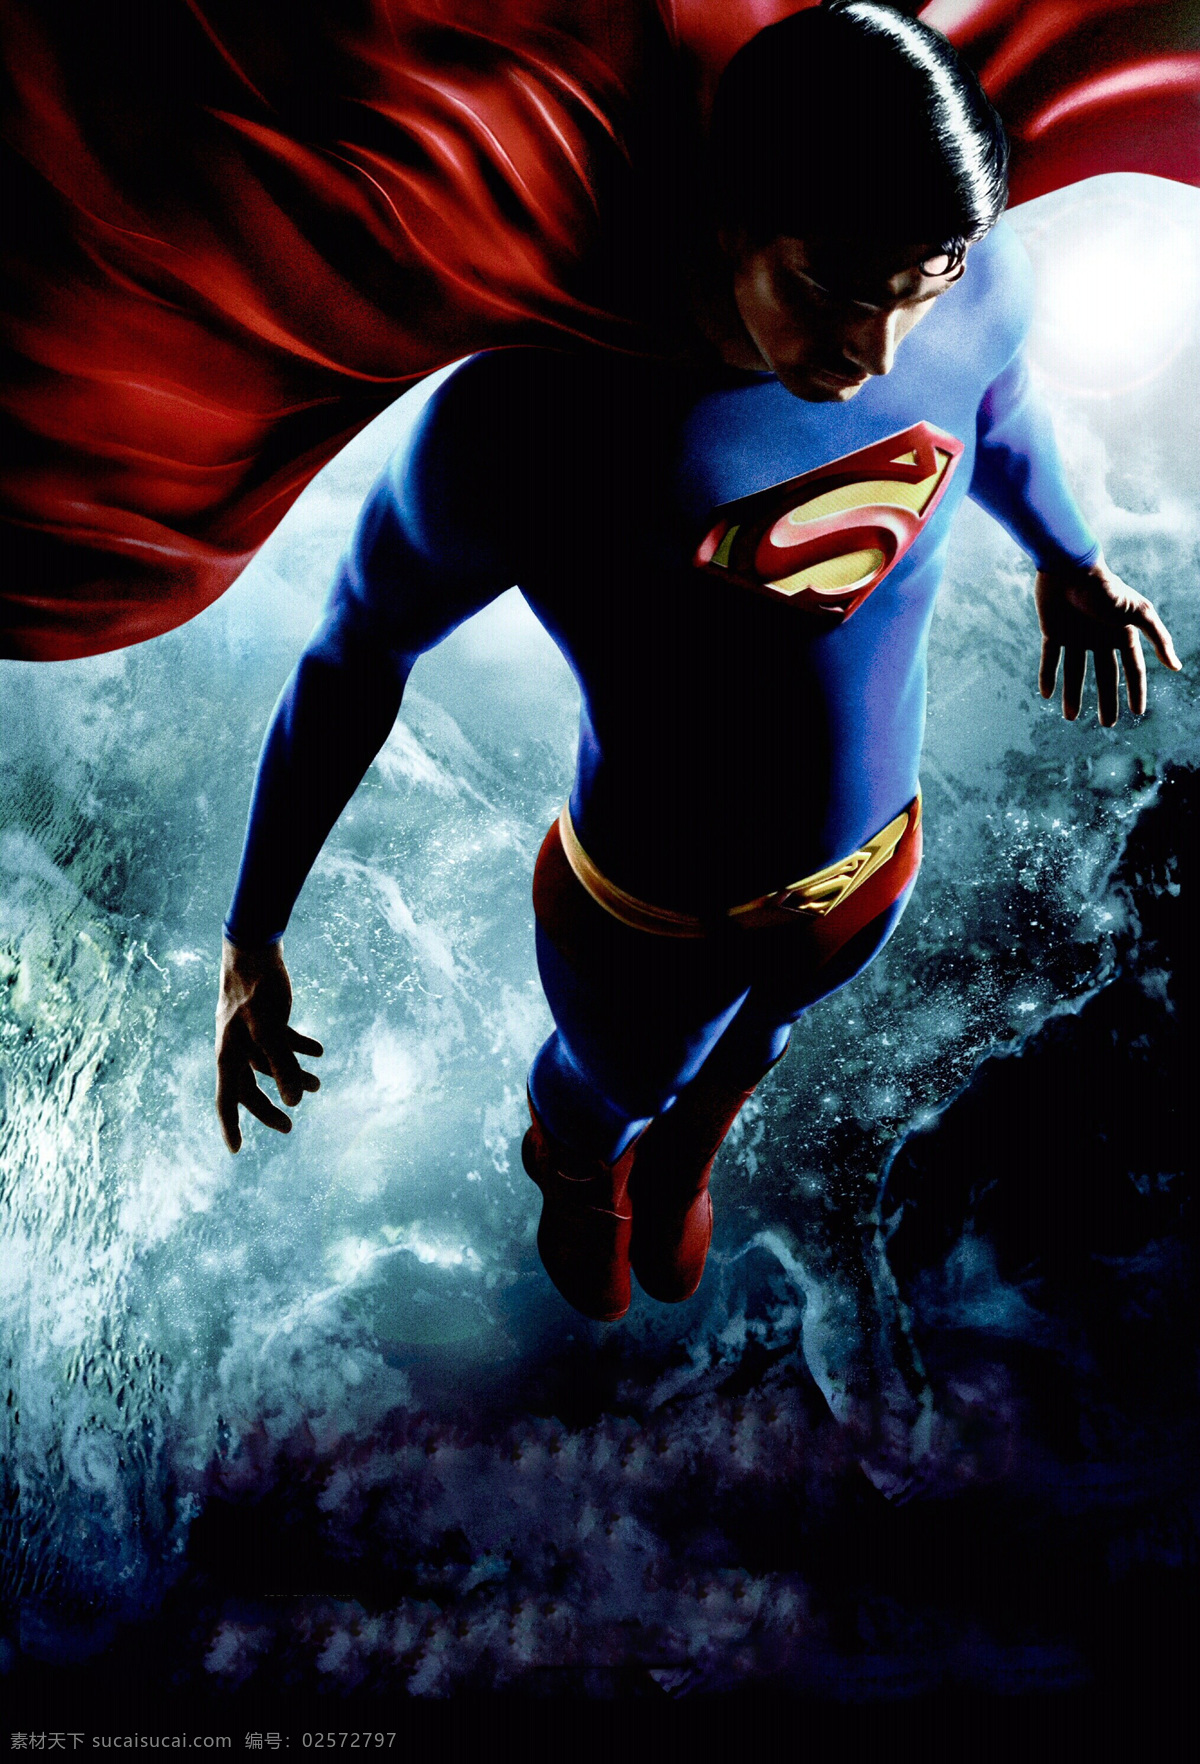 超人 超人归来 布兰登 罗斯 克拉克 dc漫画 电影 电影海报 dcue 文化艺术 影视娱乐